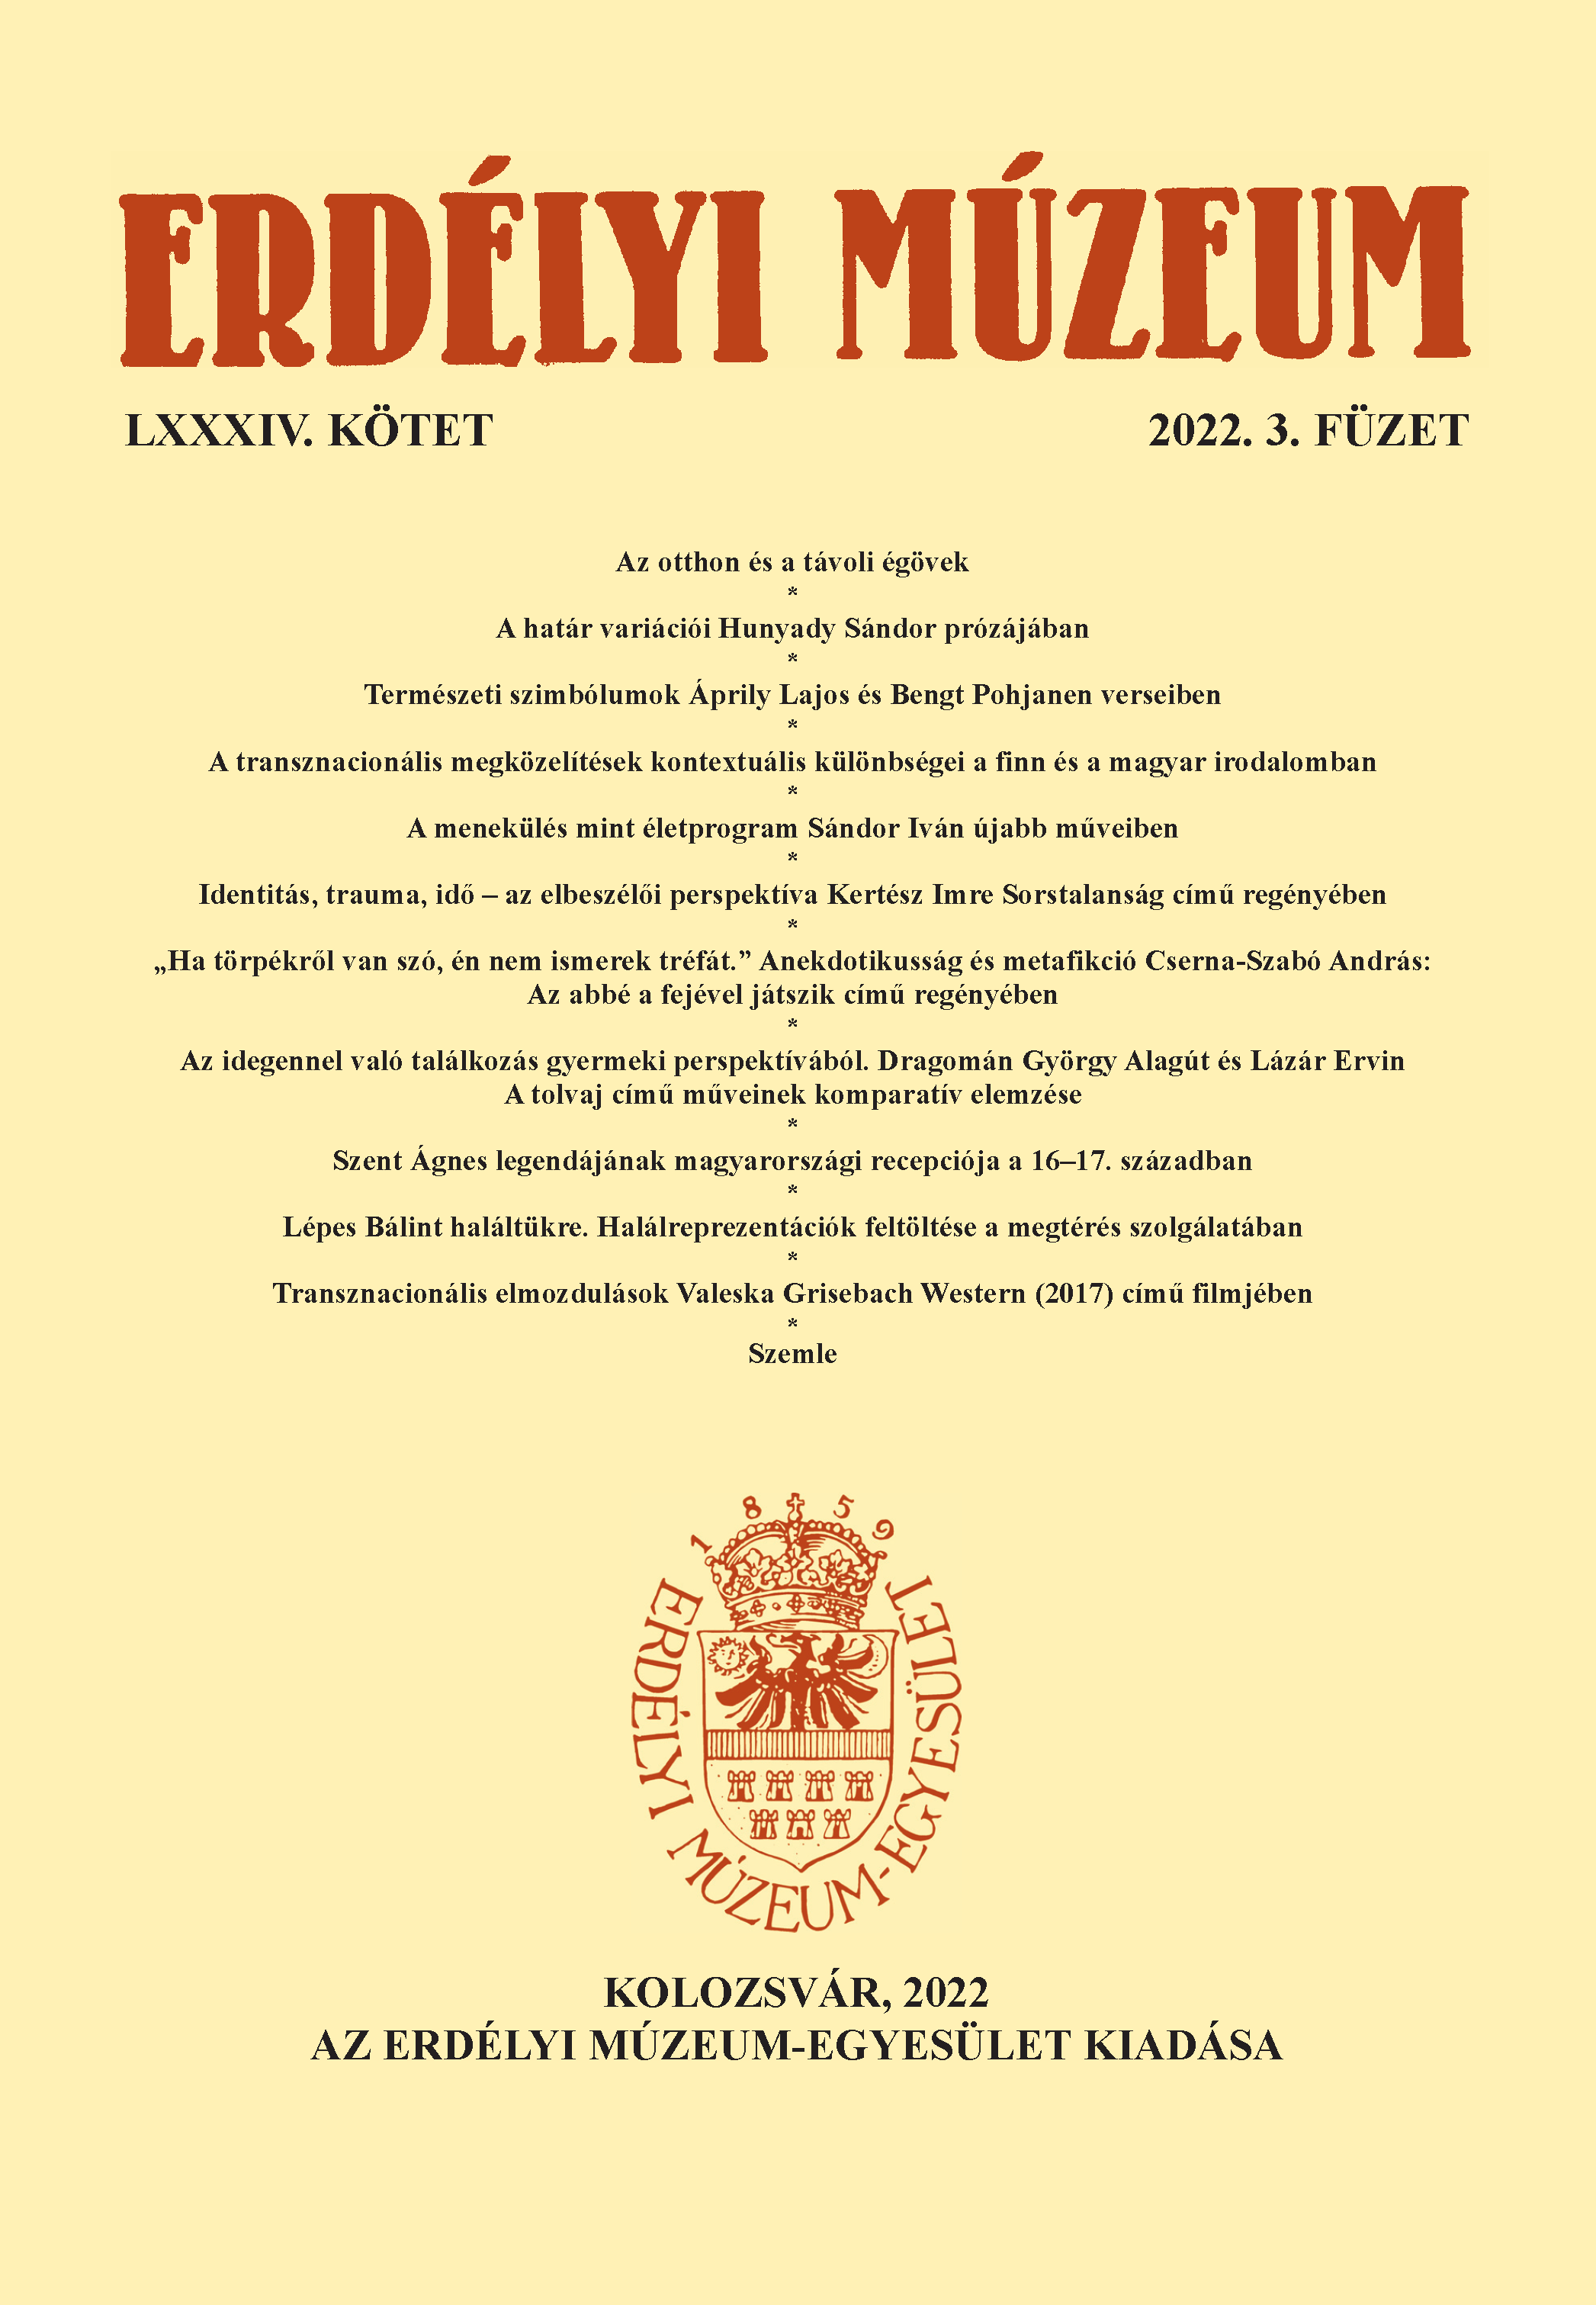 A transznacionális megközelítések kontextuális különbségei a finn és a magyar irodalomban